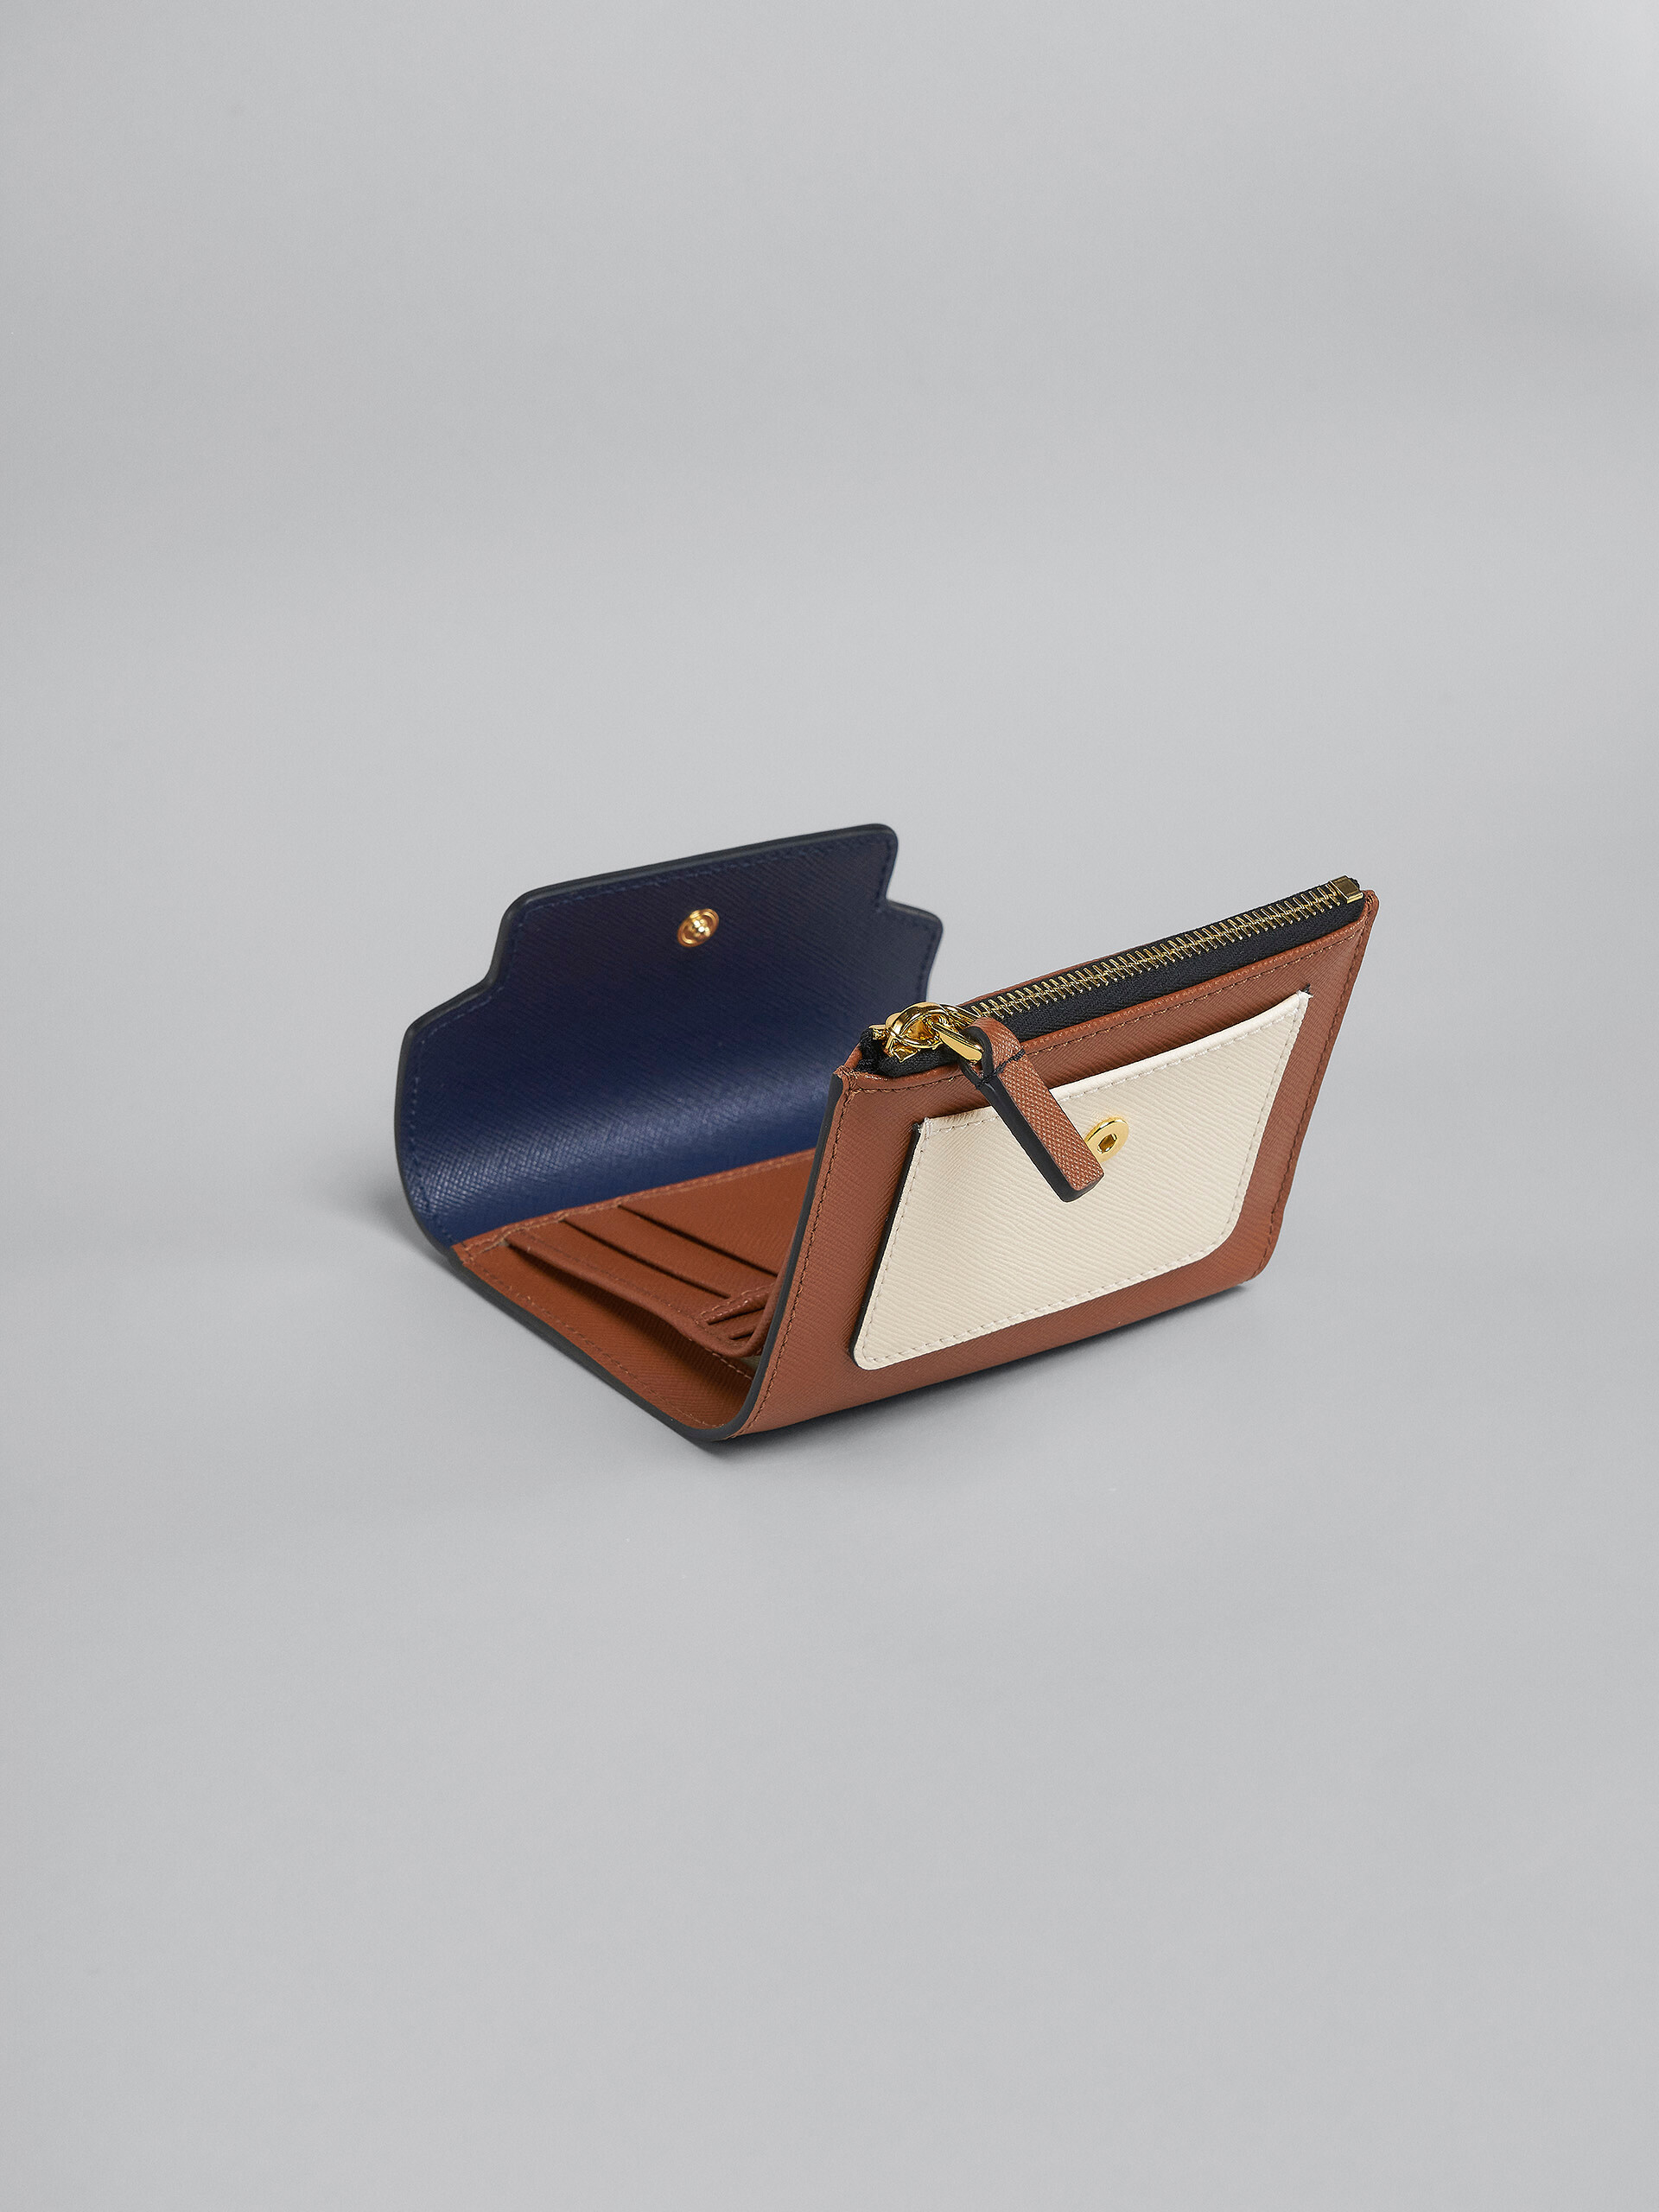 Portafoglio tri-fold in saffiano blu bianco e marrone - Portafogli - Image 5